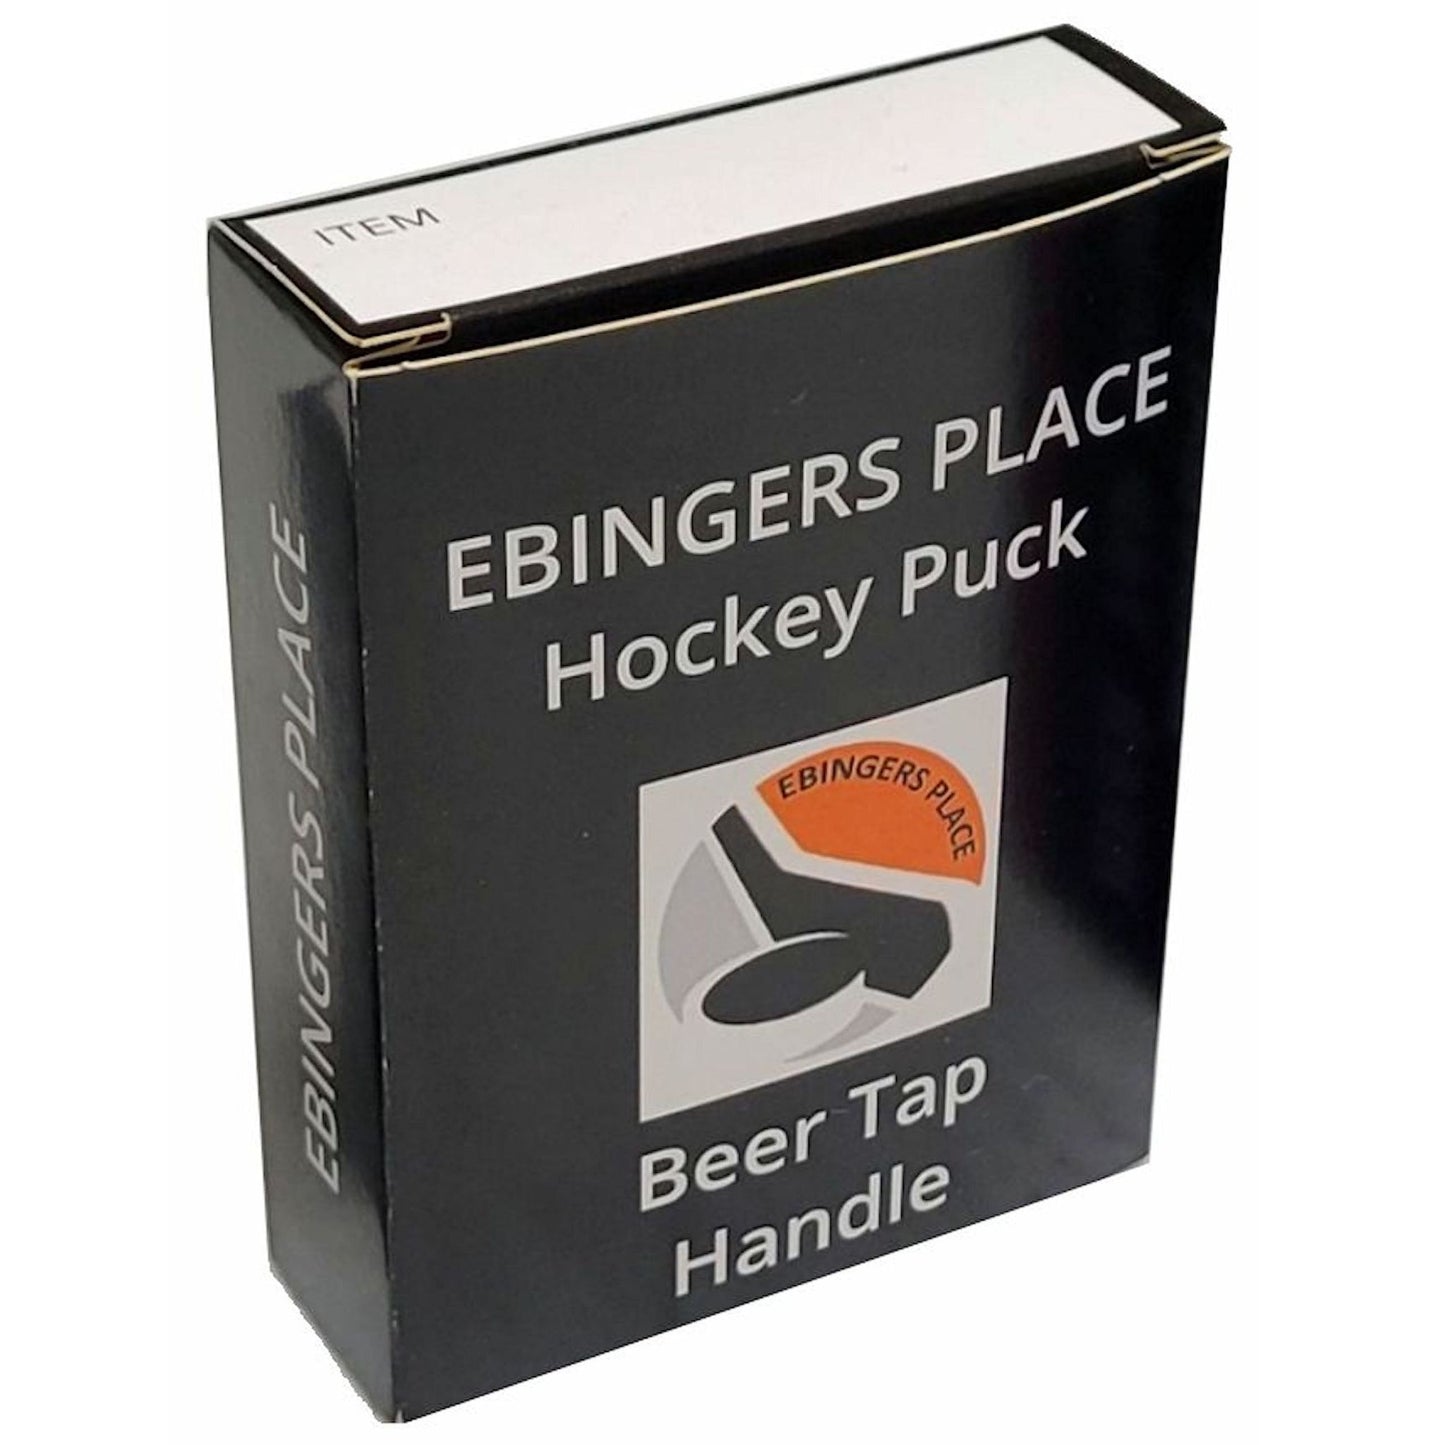 Calgary Flames Clone Series Hockey Puck Beer Tap Handle